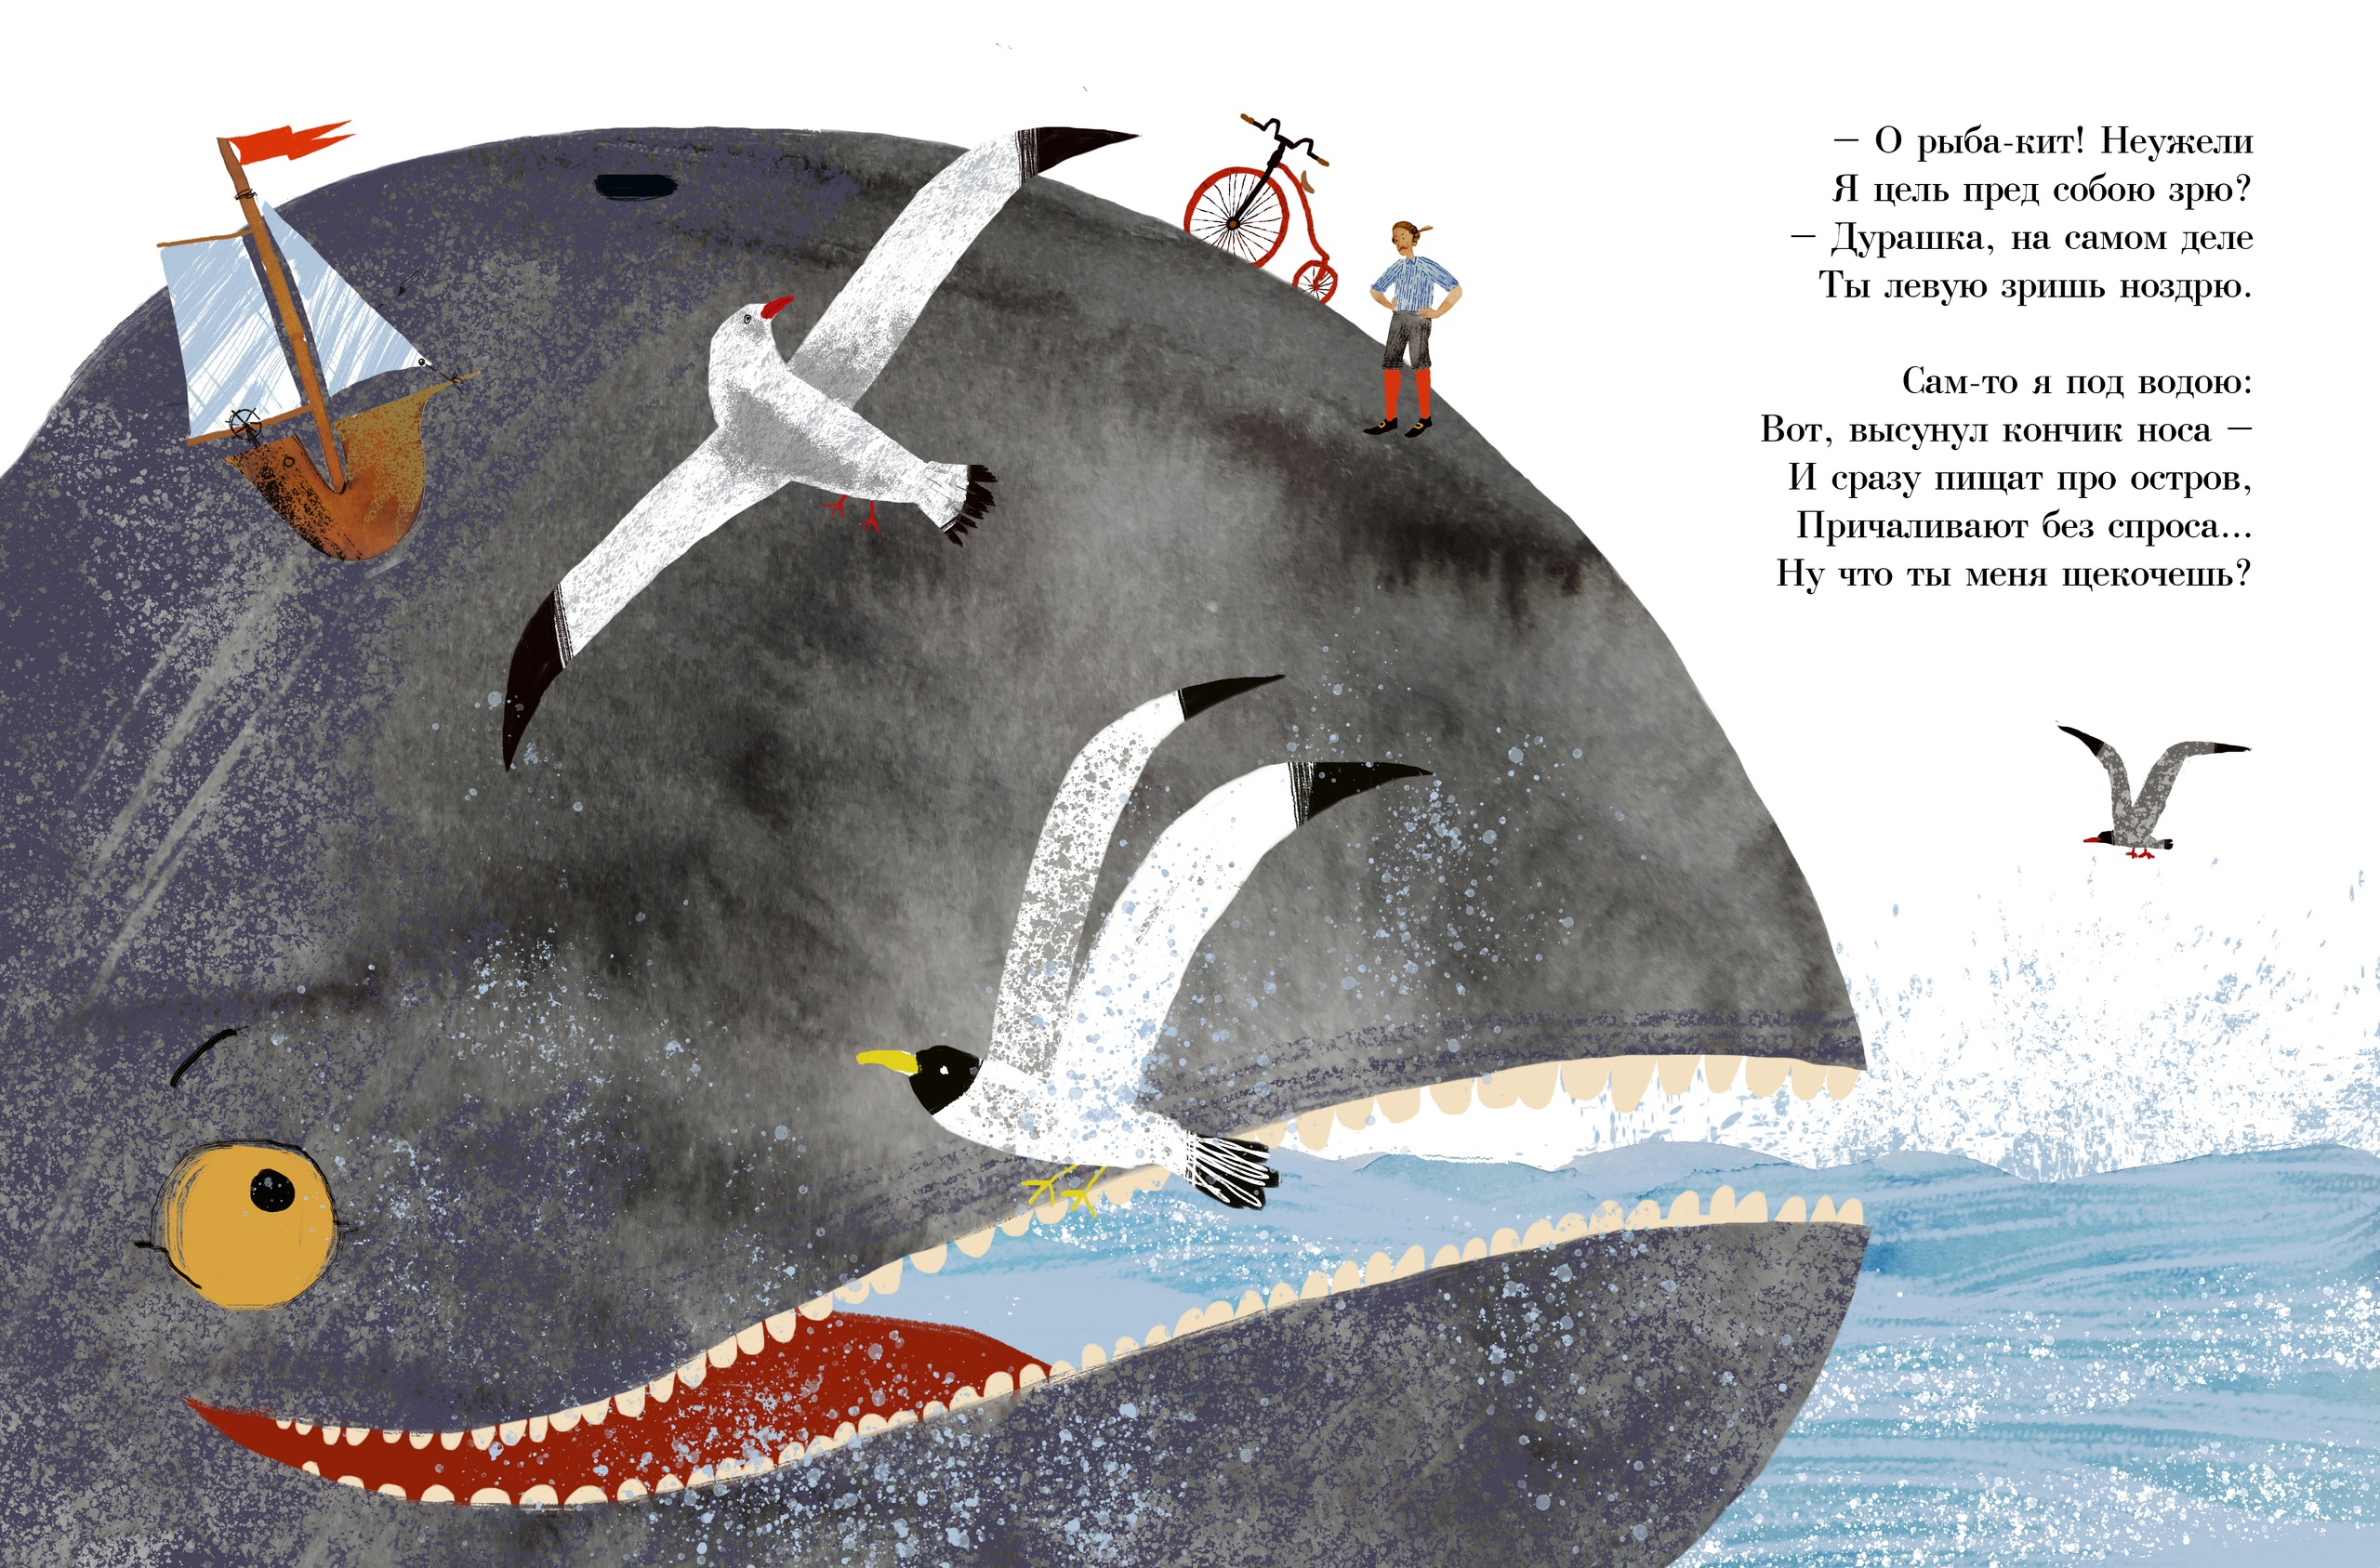 Иллюстрация к сказке рыба кит